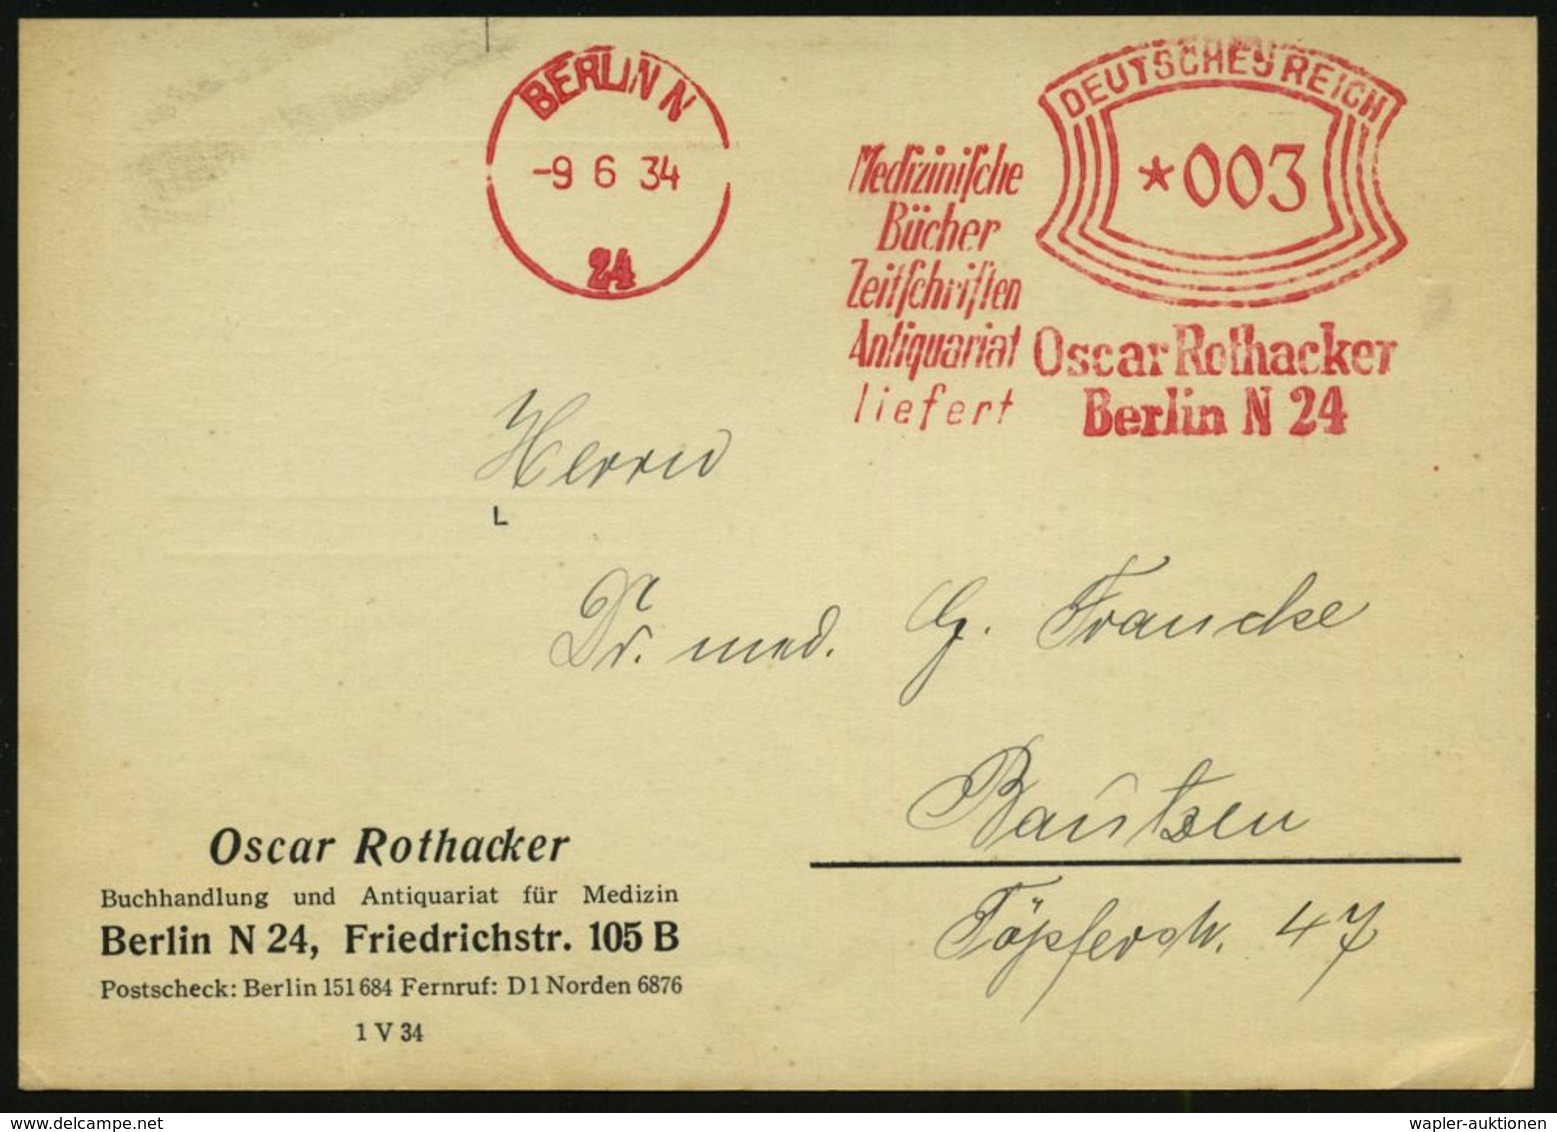 MEDIZIN / GESUNDHEITSWESEN : BERLIN N/ 24/ Medizin./ Bücher/ Zeitschriften/ Antiquariat/ Liefert/ Oscar Rothacker 1934 ( - Medicina